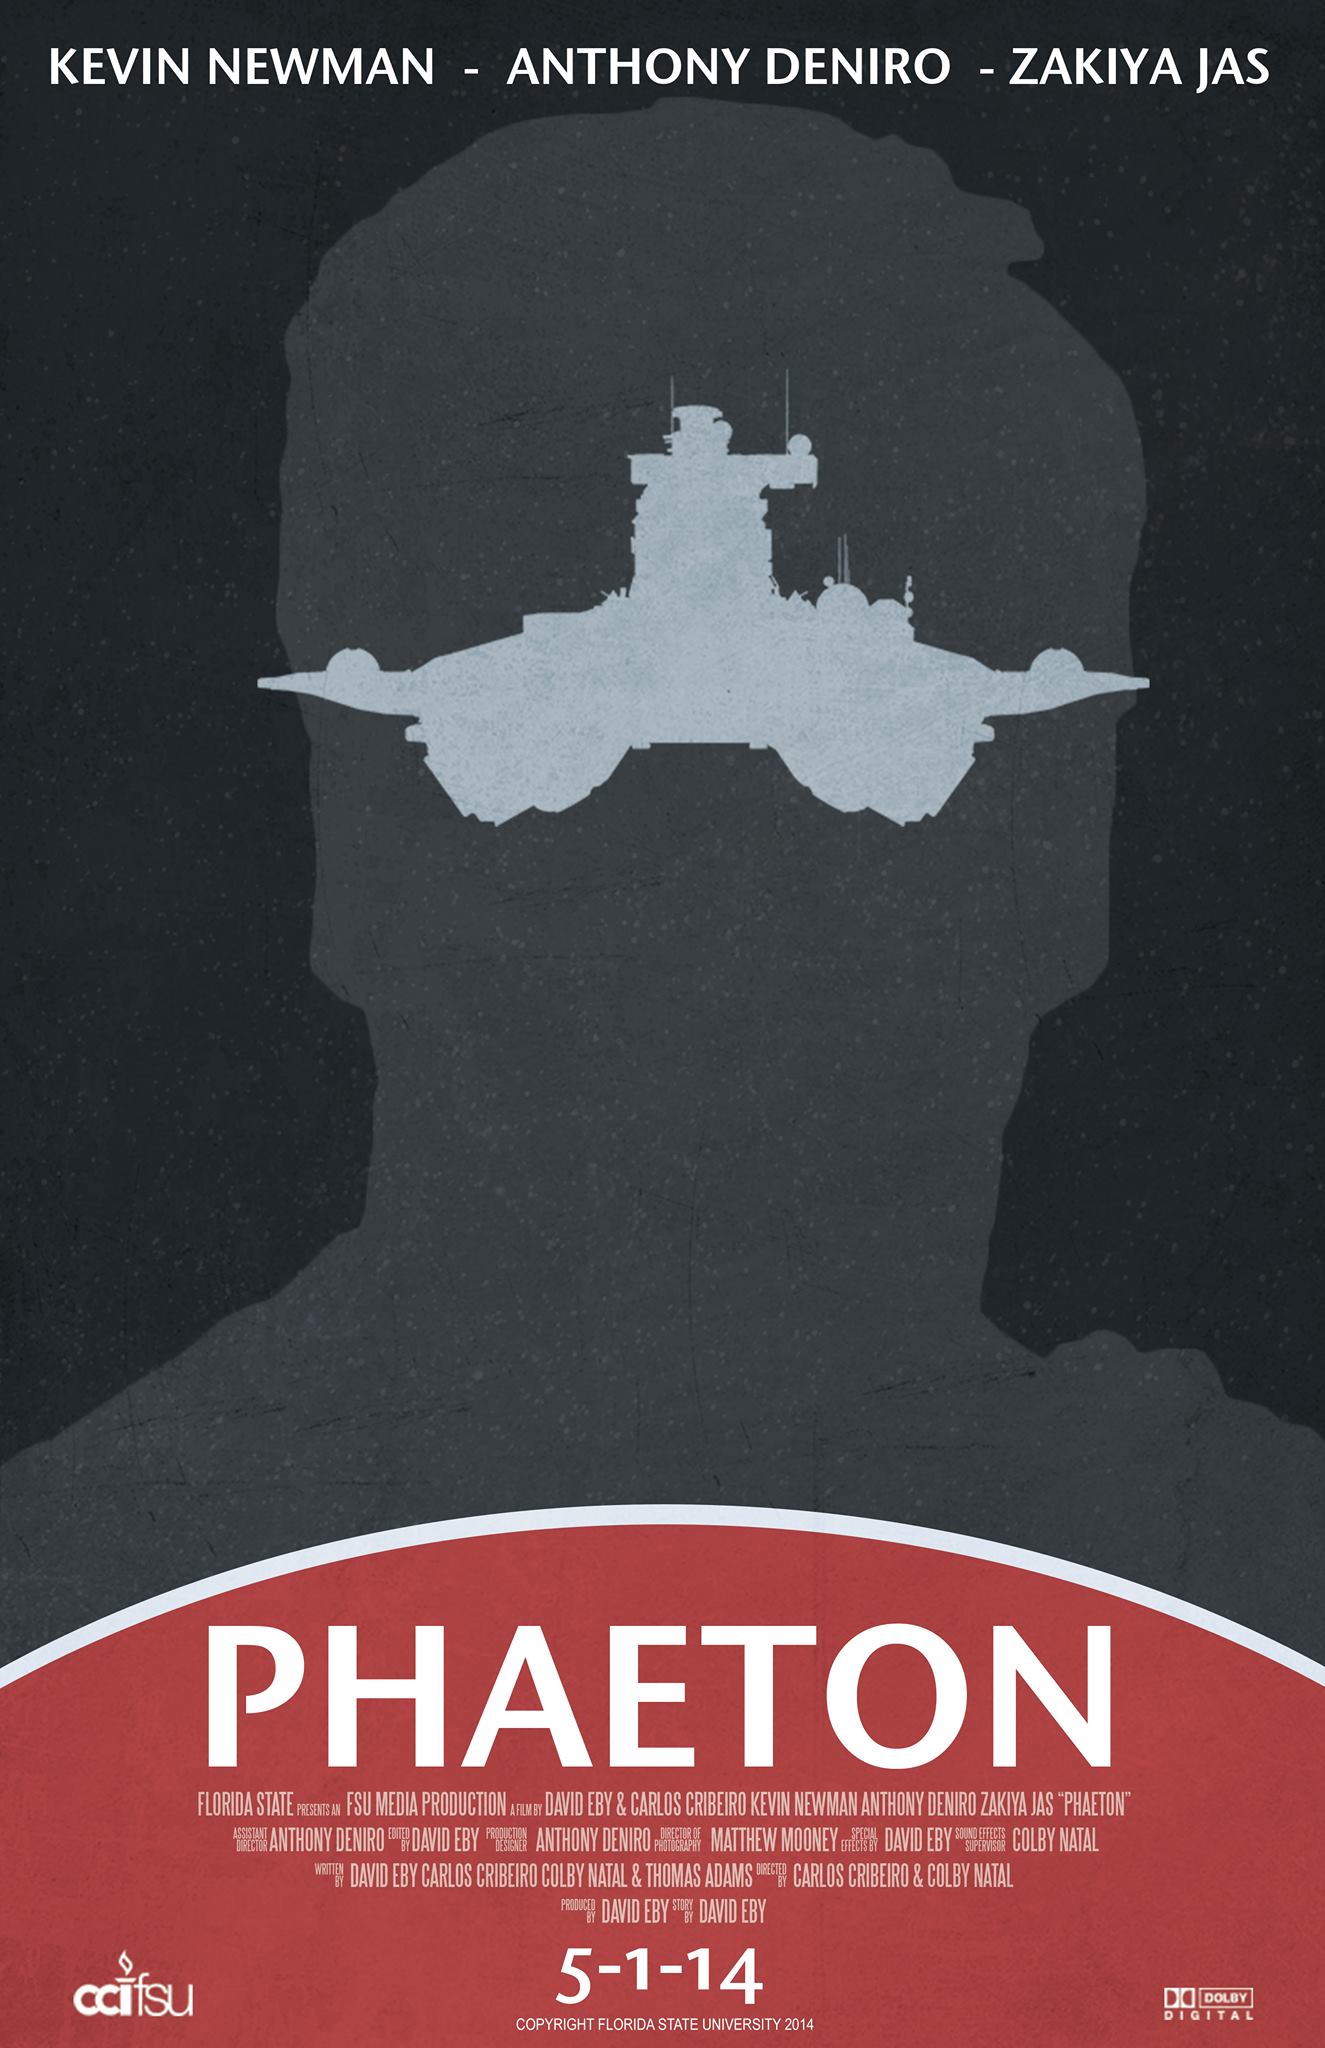 Phaeton: Starring Kevin Newman, Anthony Deniro and Zakiya Jas